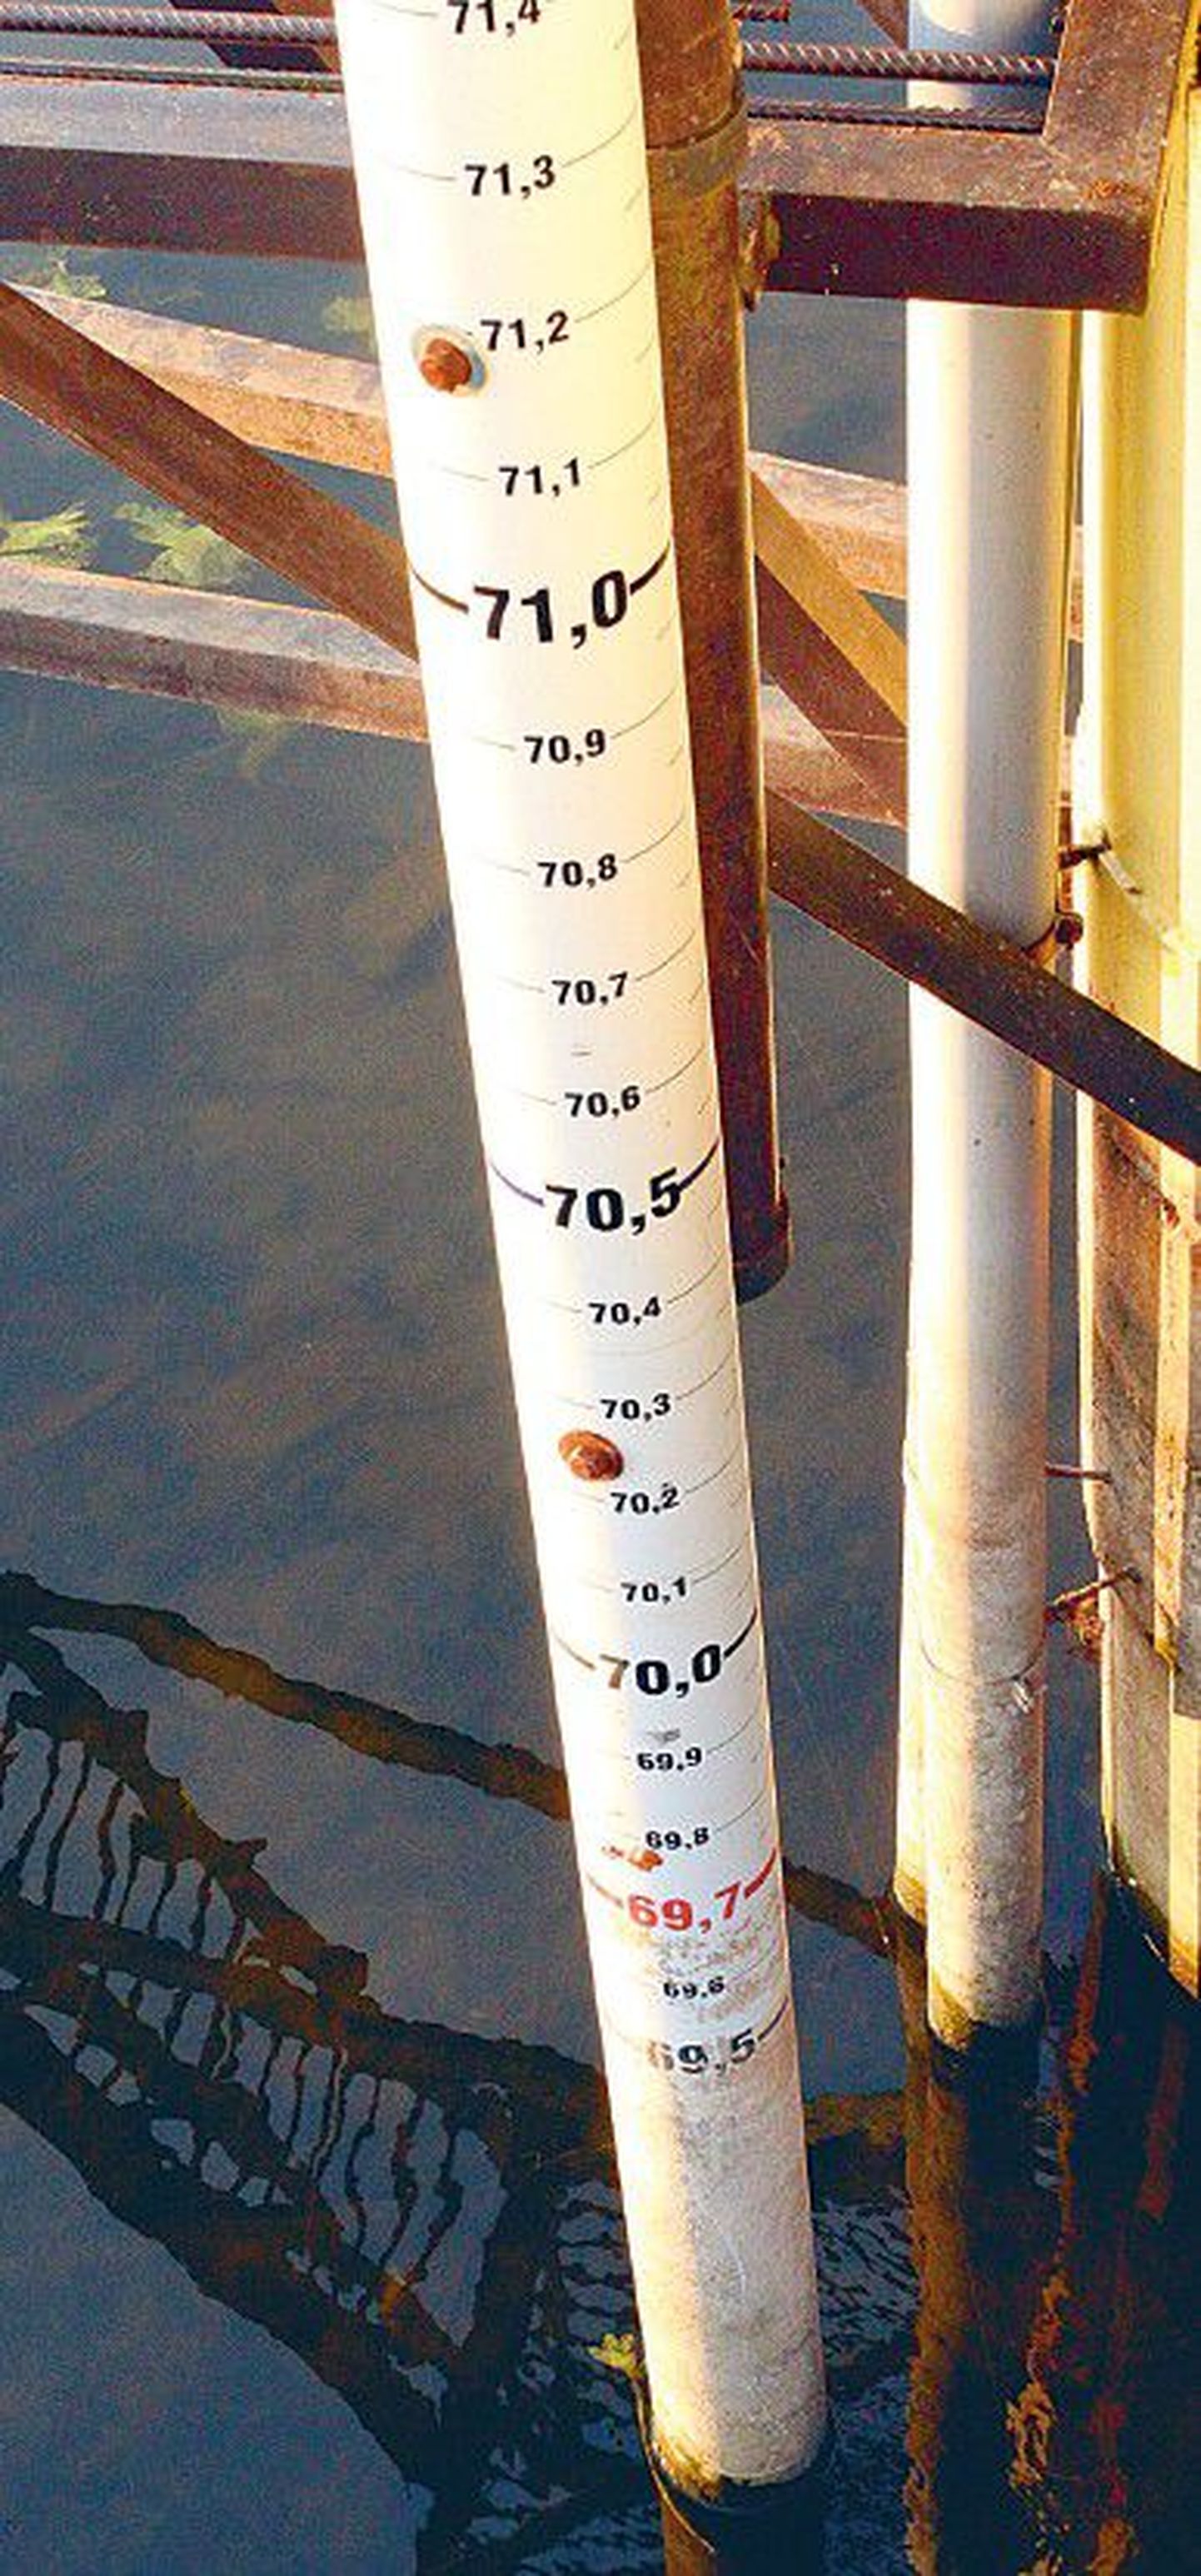 Уровень воды в озере Тамула упал ниже минимальной отметки на футштоке. Вырусцы шутят, что тамулаский озерный старик продырявил дно озера.